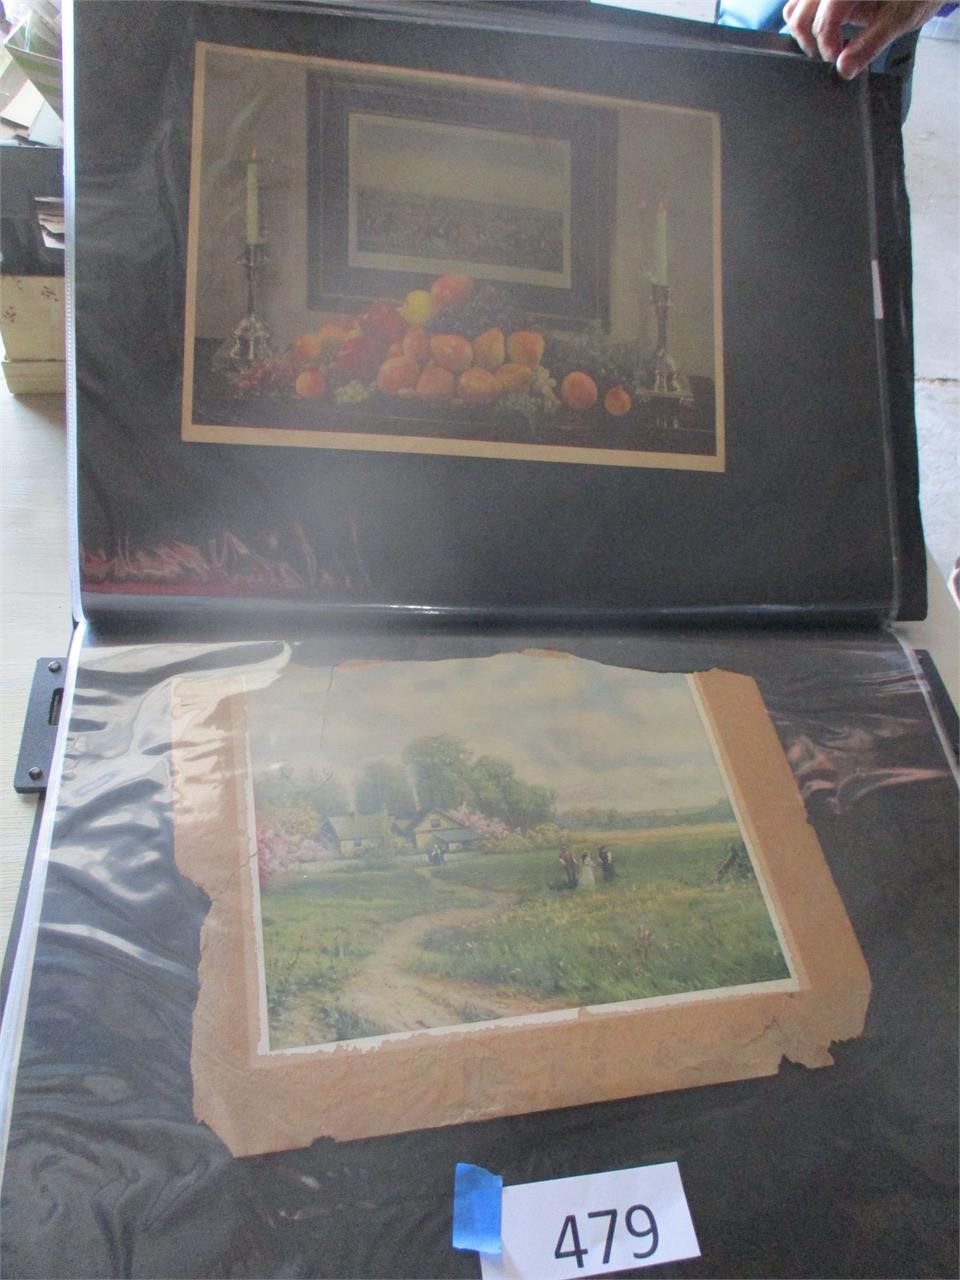 2 Vintage Prints--Still Life and Landscape